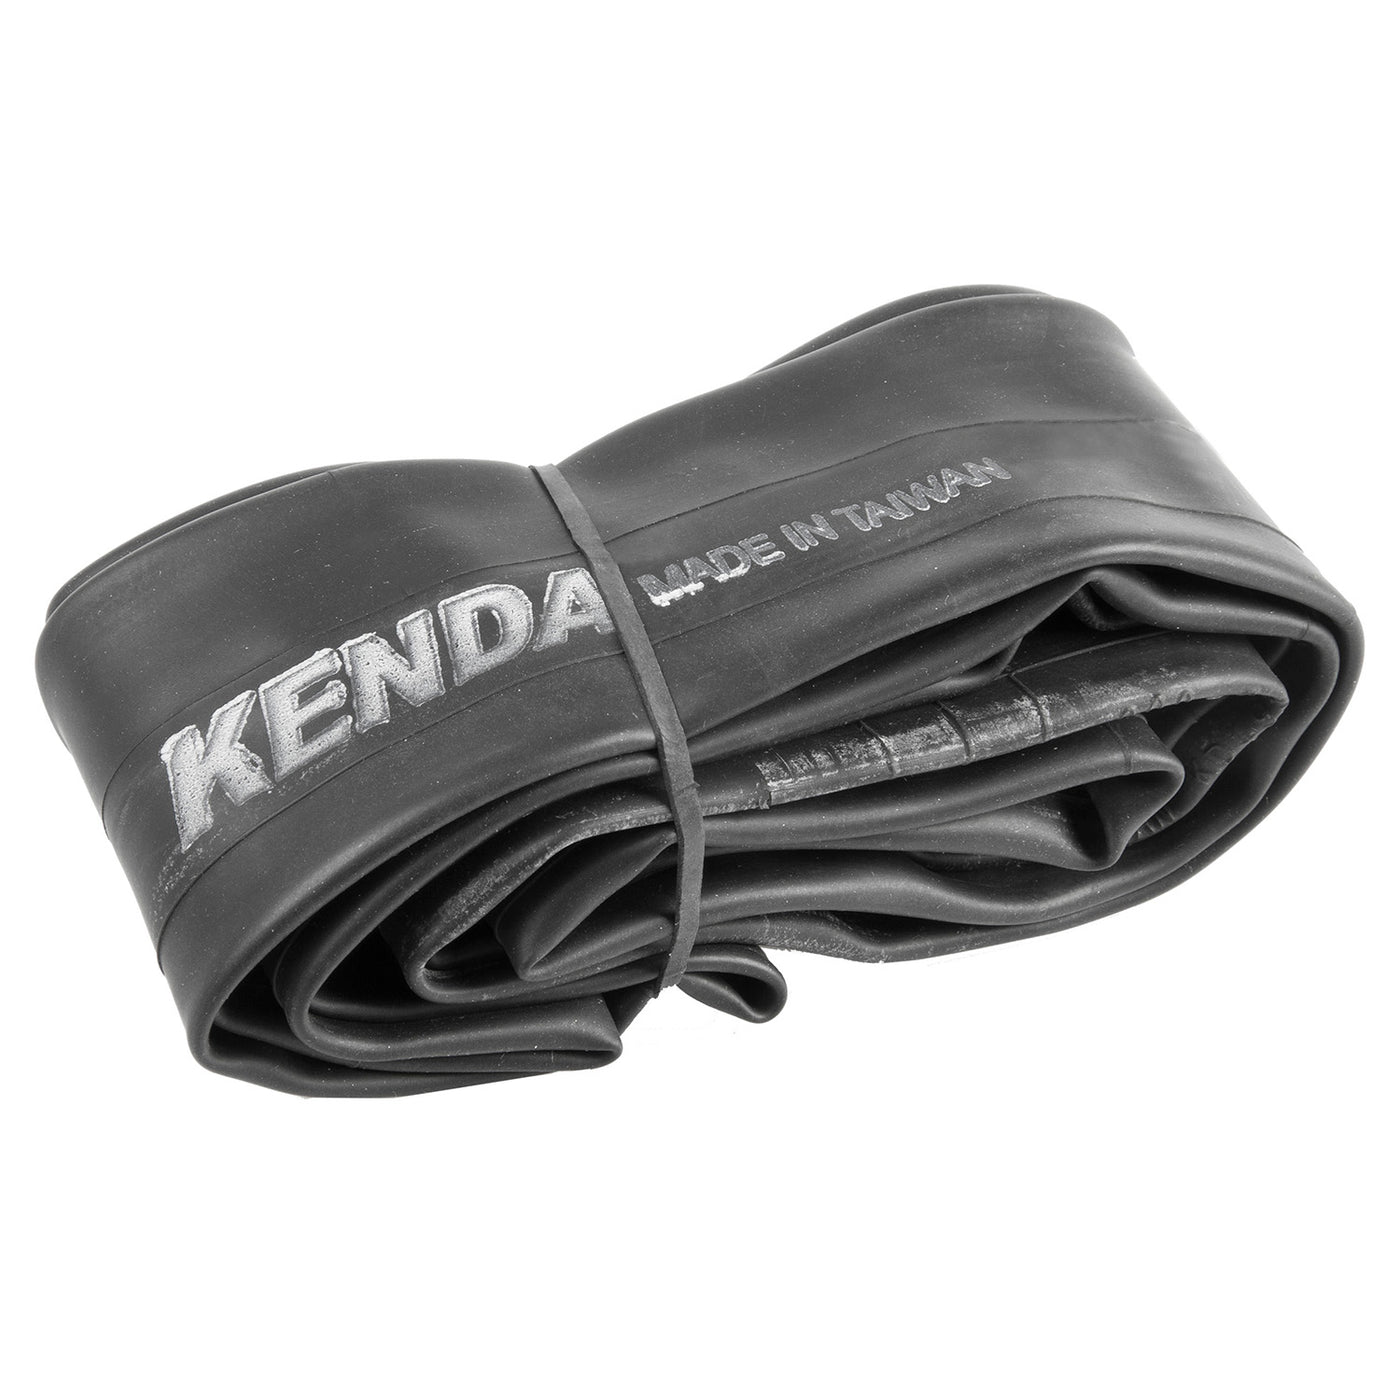 211-1002 - Kenda Inner Tube 27.5 x 2.35 inch